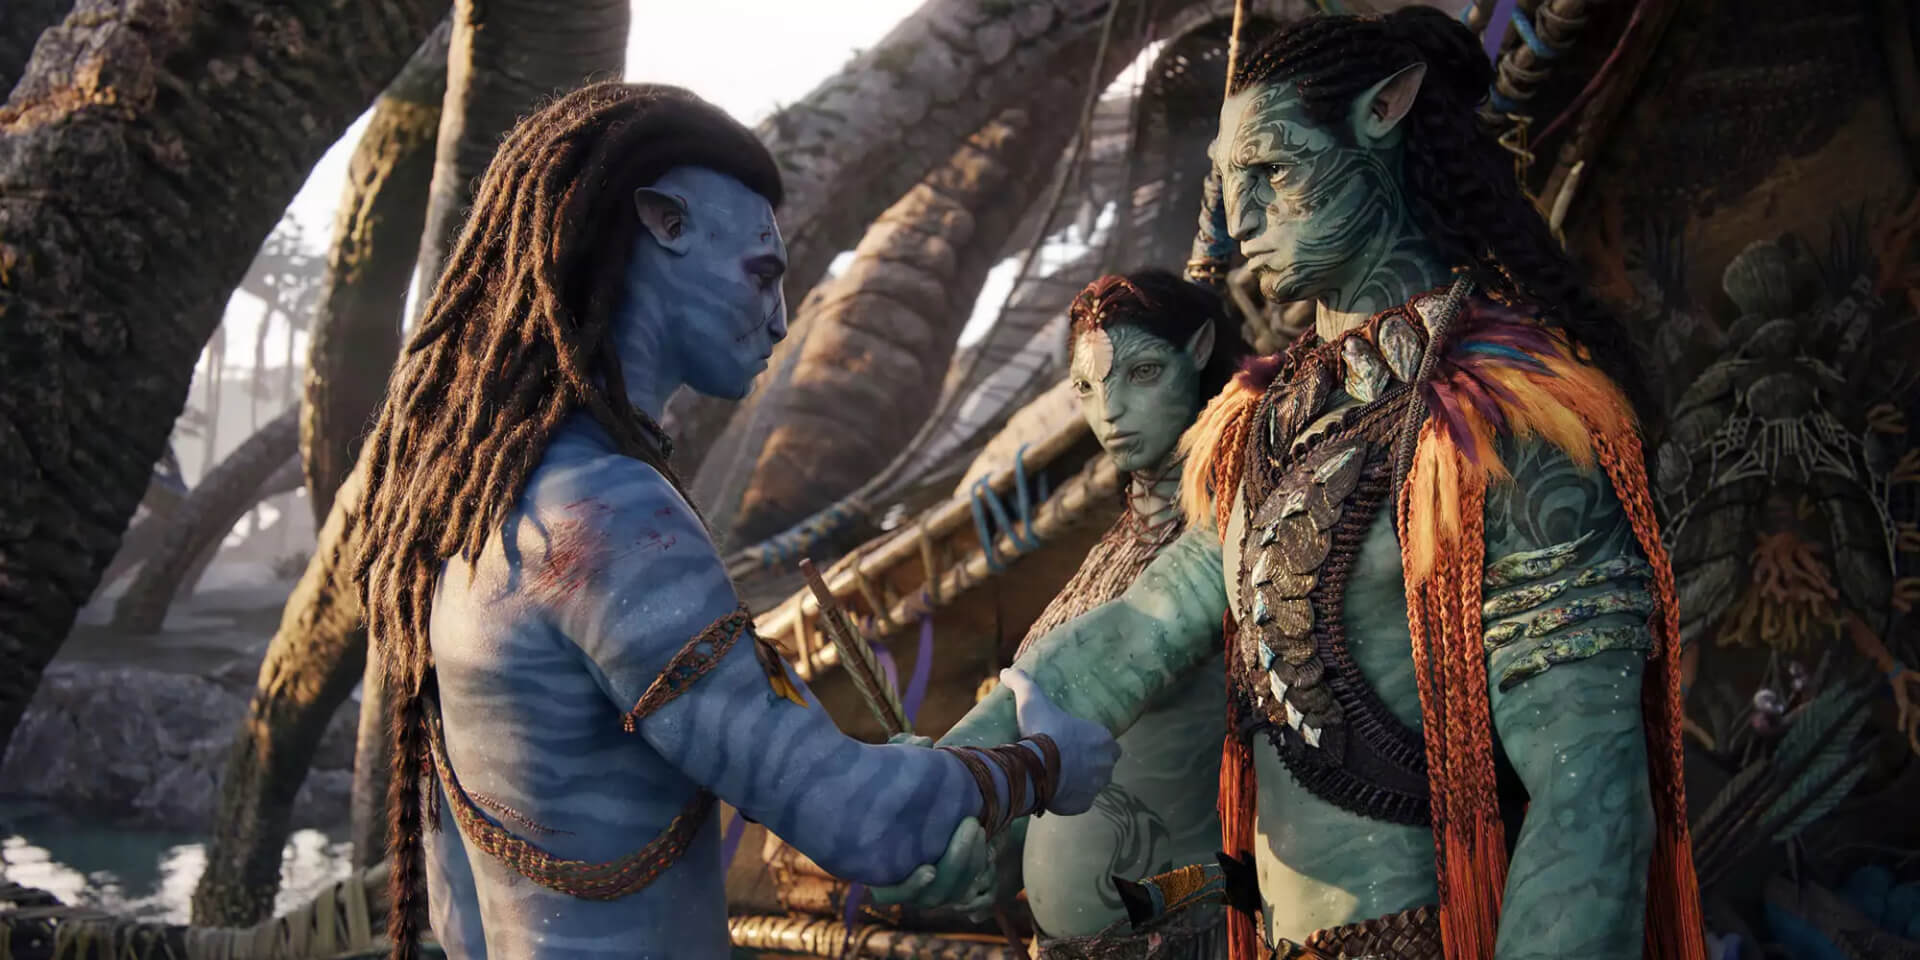 Itt az Avatar: A víz útja második szinkronizált előzetese